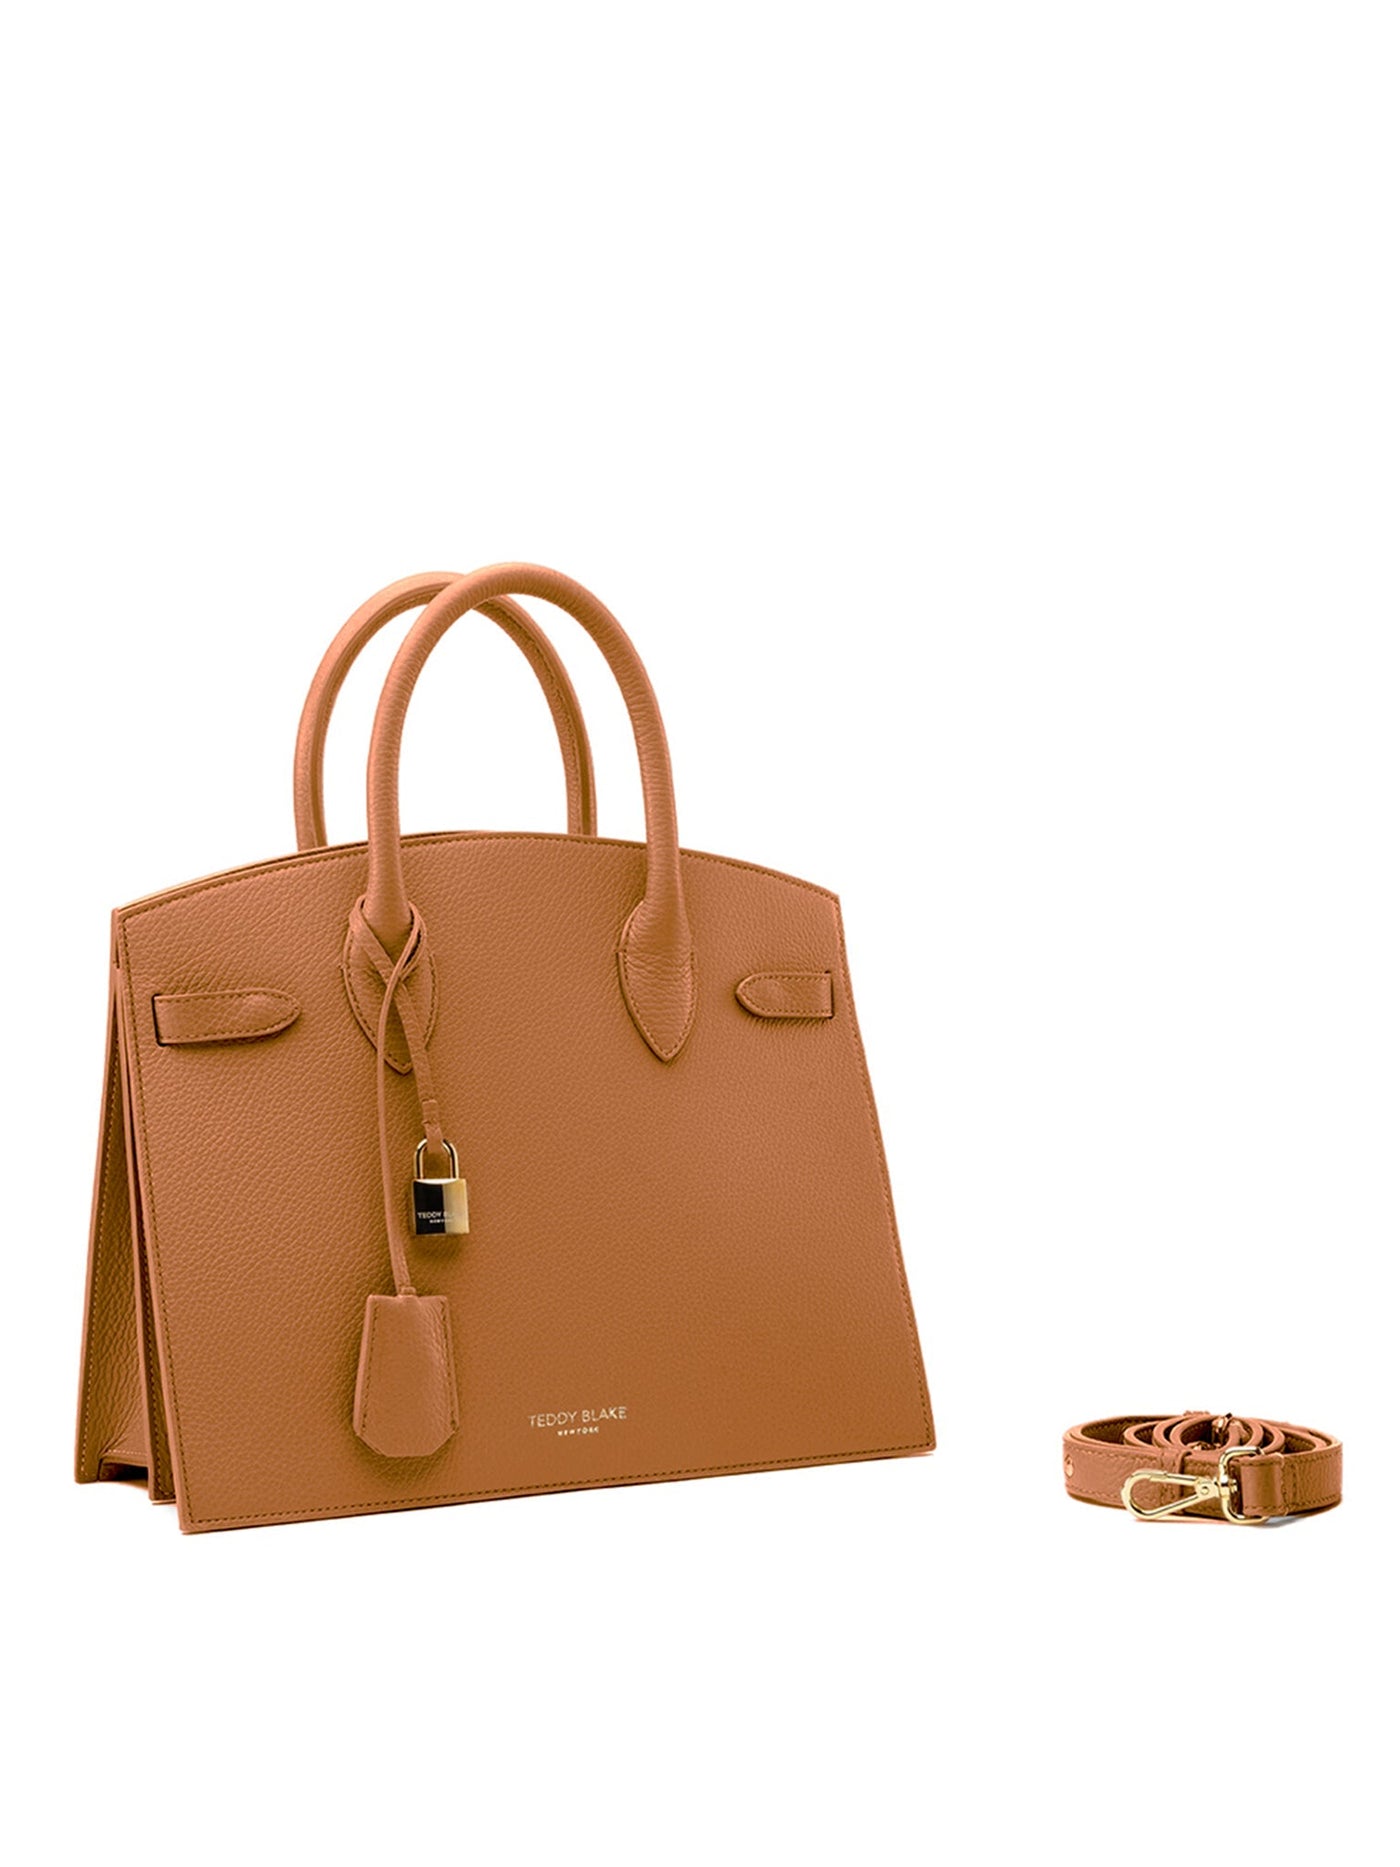 Hermes Birkin 30cm Gold Camel Tan Togo Gold Hardware Bag For Sale